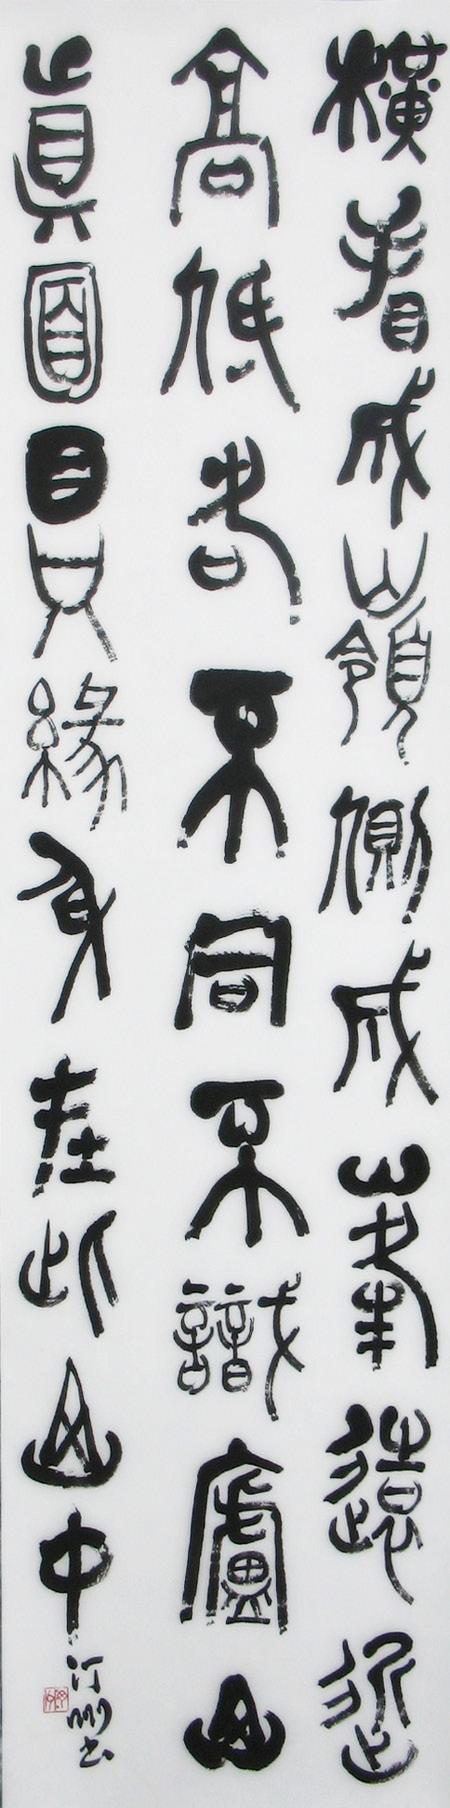 8 Glück, 2014 福生於無為 Glück ist da, wo Gelassenheit und Musse ist Tusche auf Papier, 135 x 34 cm, mit